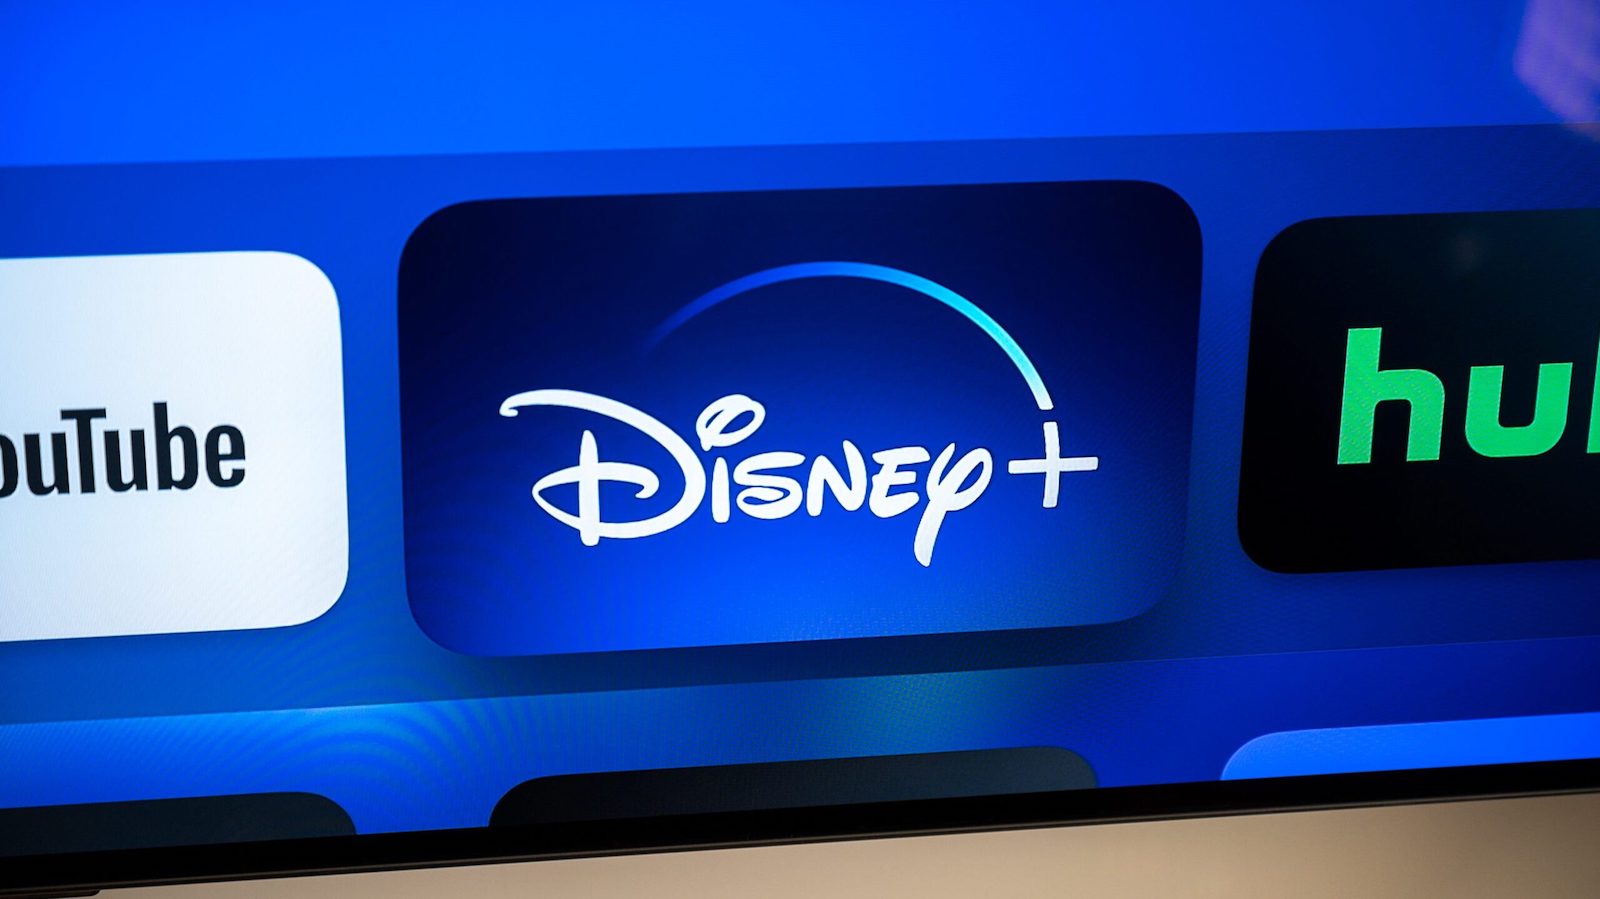 Disney Plus, problemas para a plataforma: 1,3 milhão de assinantes perdidos devido ao aumento de preços